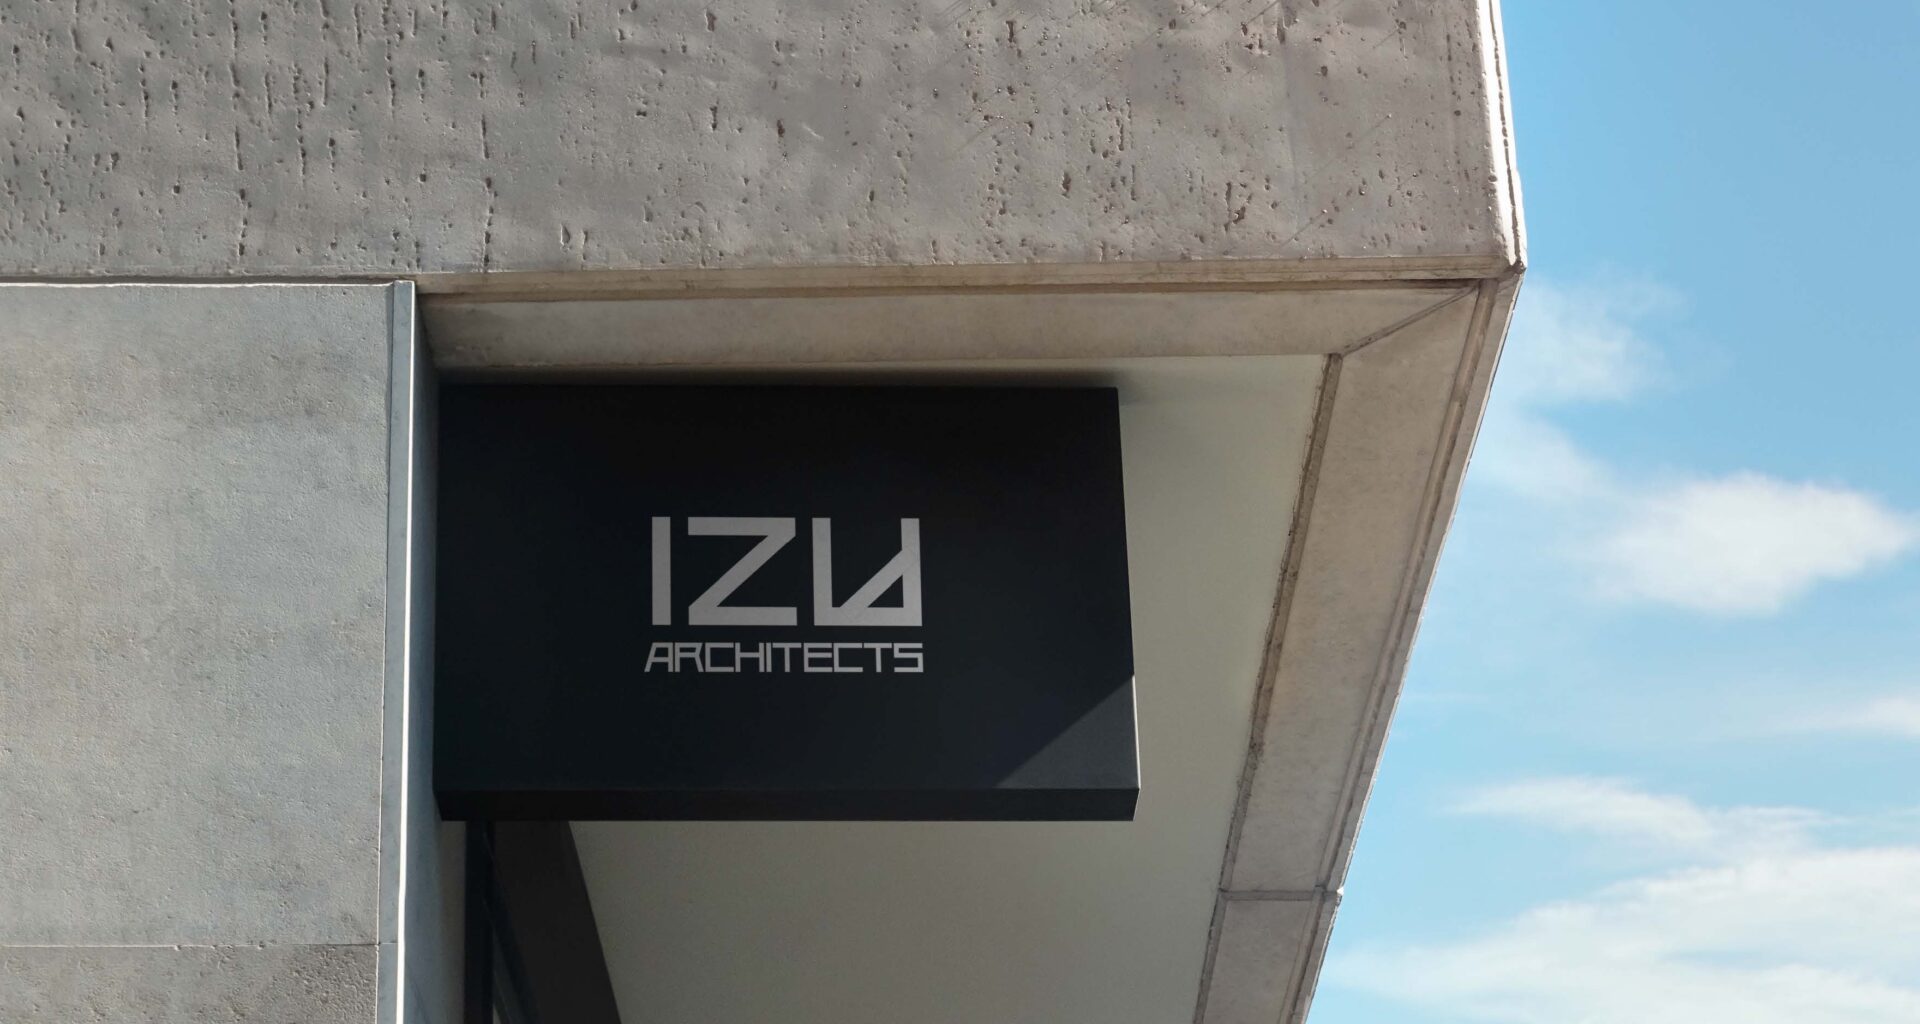 IZU Архитектура